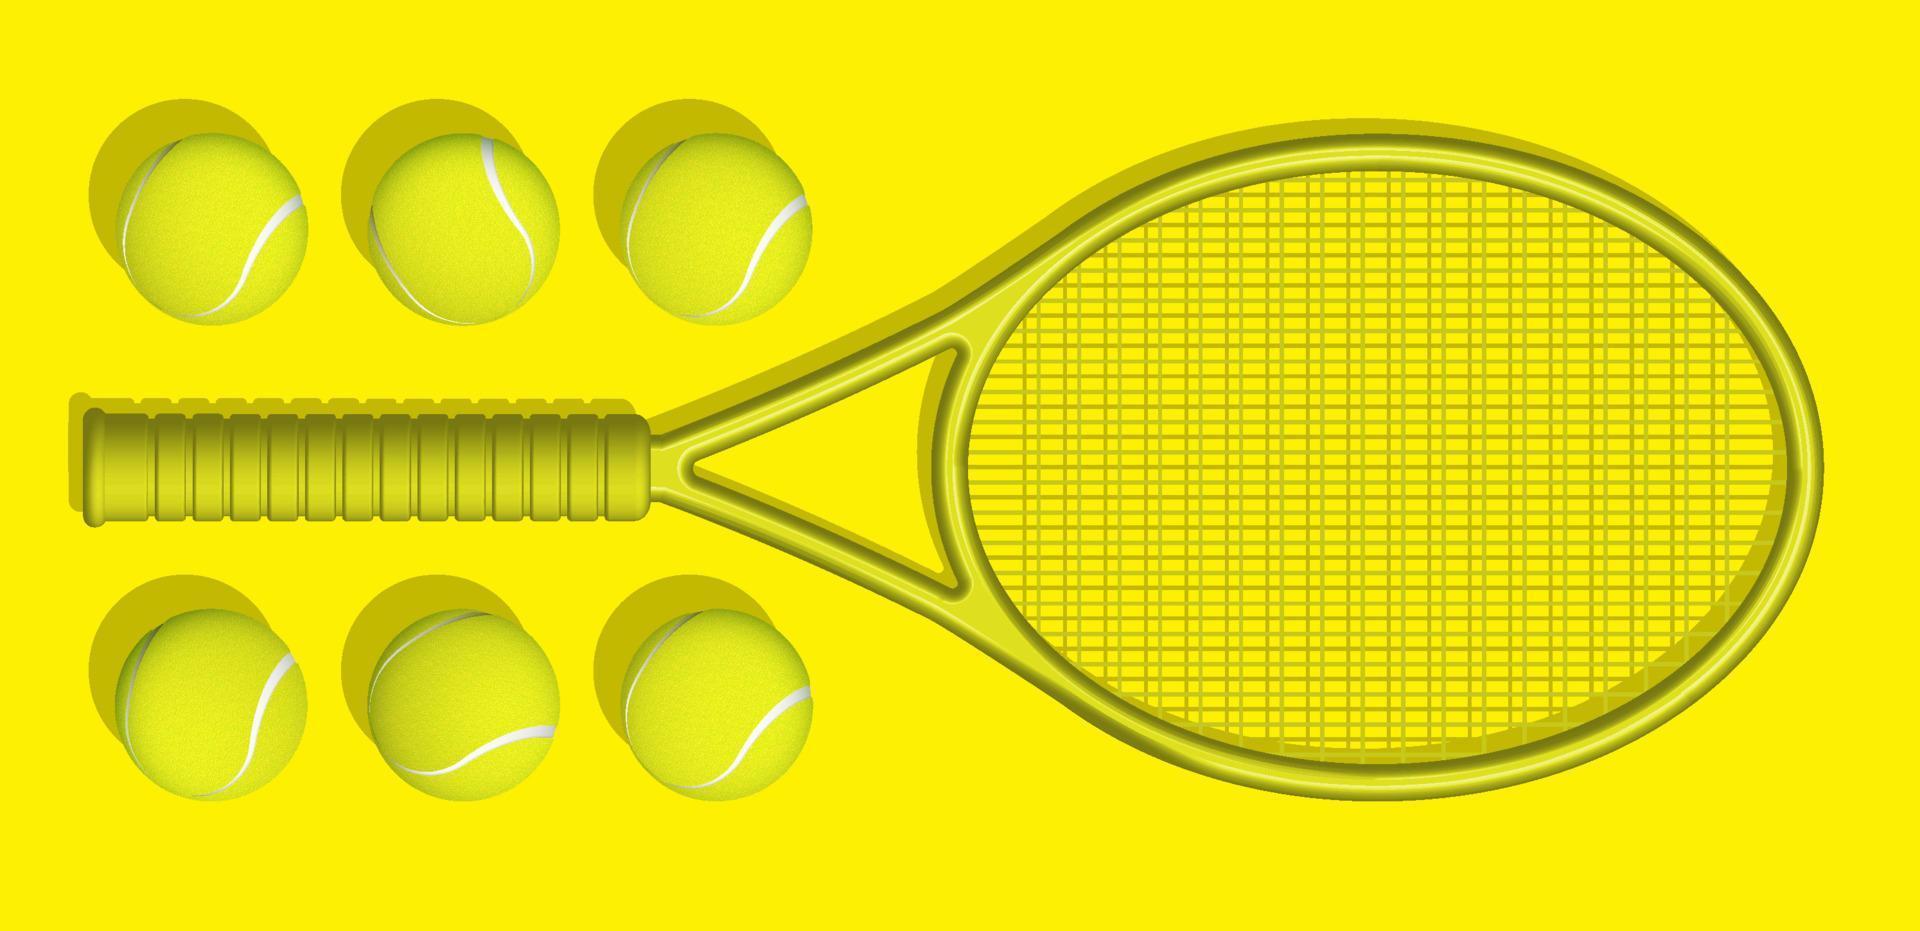 gul tennis racketar och bollar lögn på gul bakgrund av tennis domstol. sport Utrustning och lager. realistisk vektor